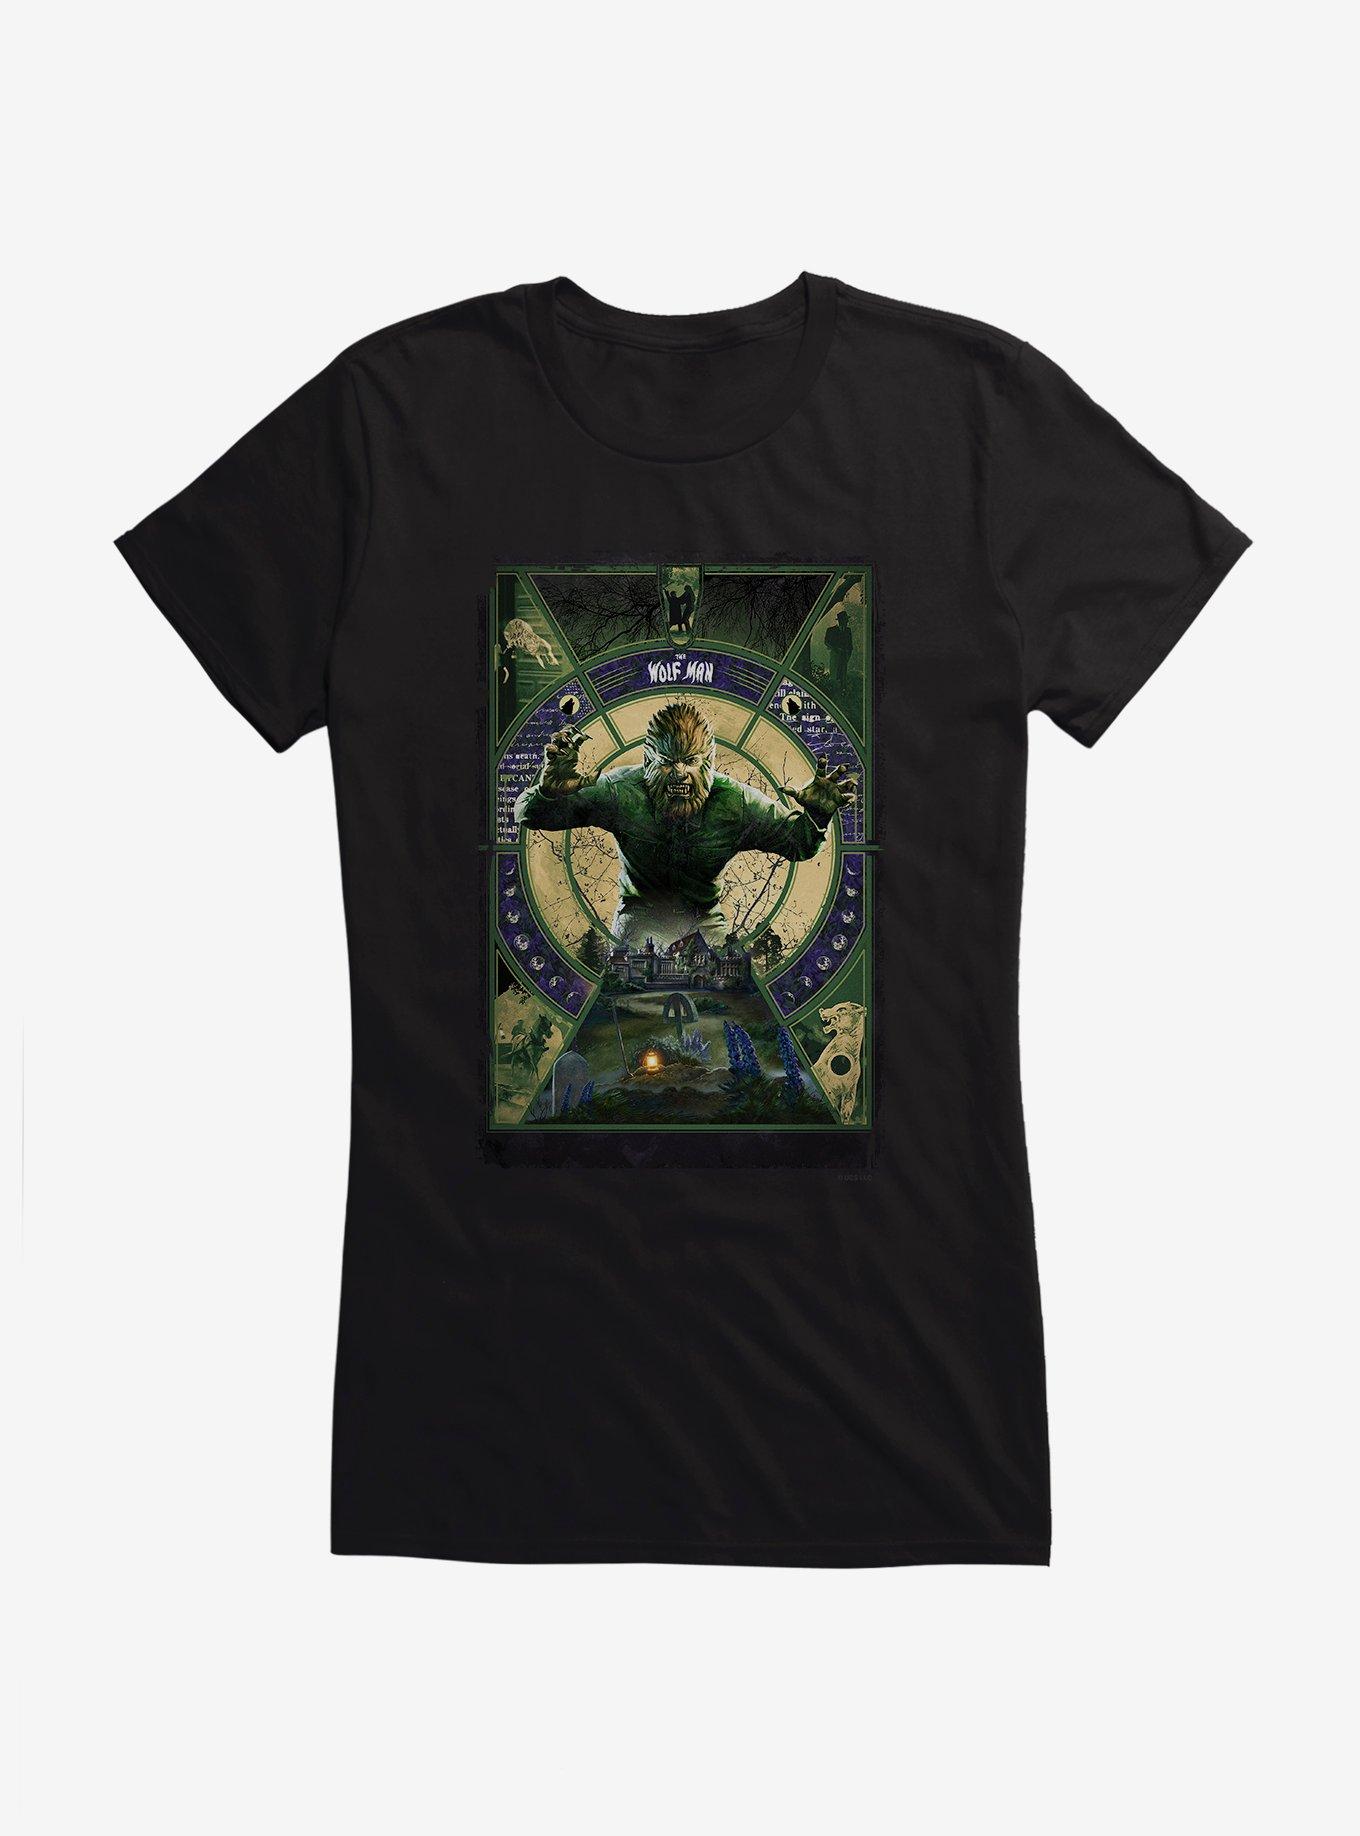 The Wolf Man Graveyard Girls T-Shirt